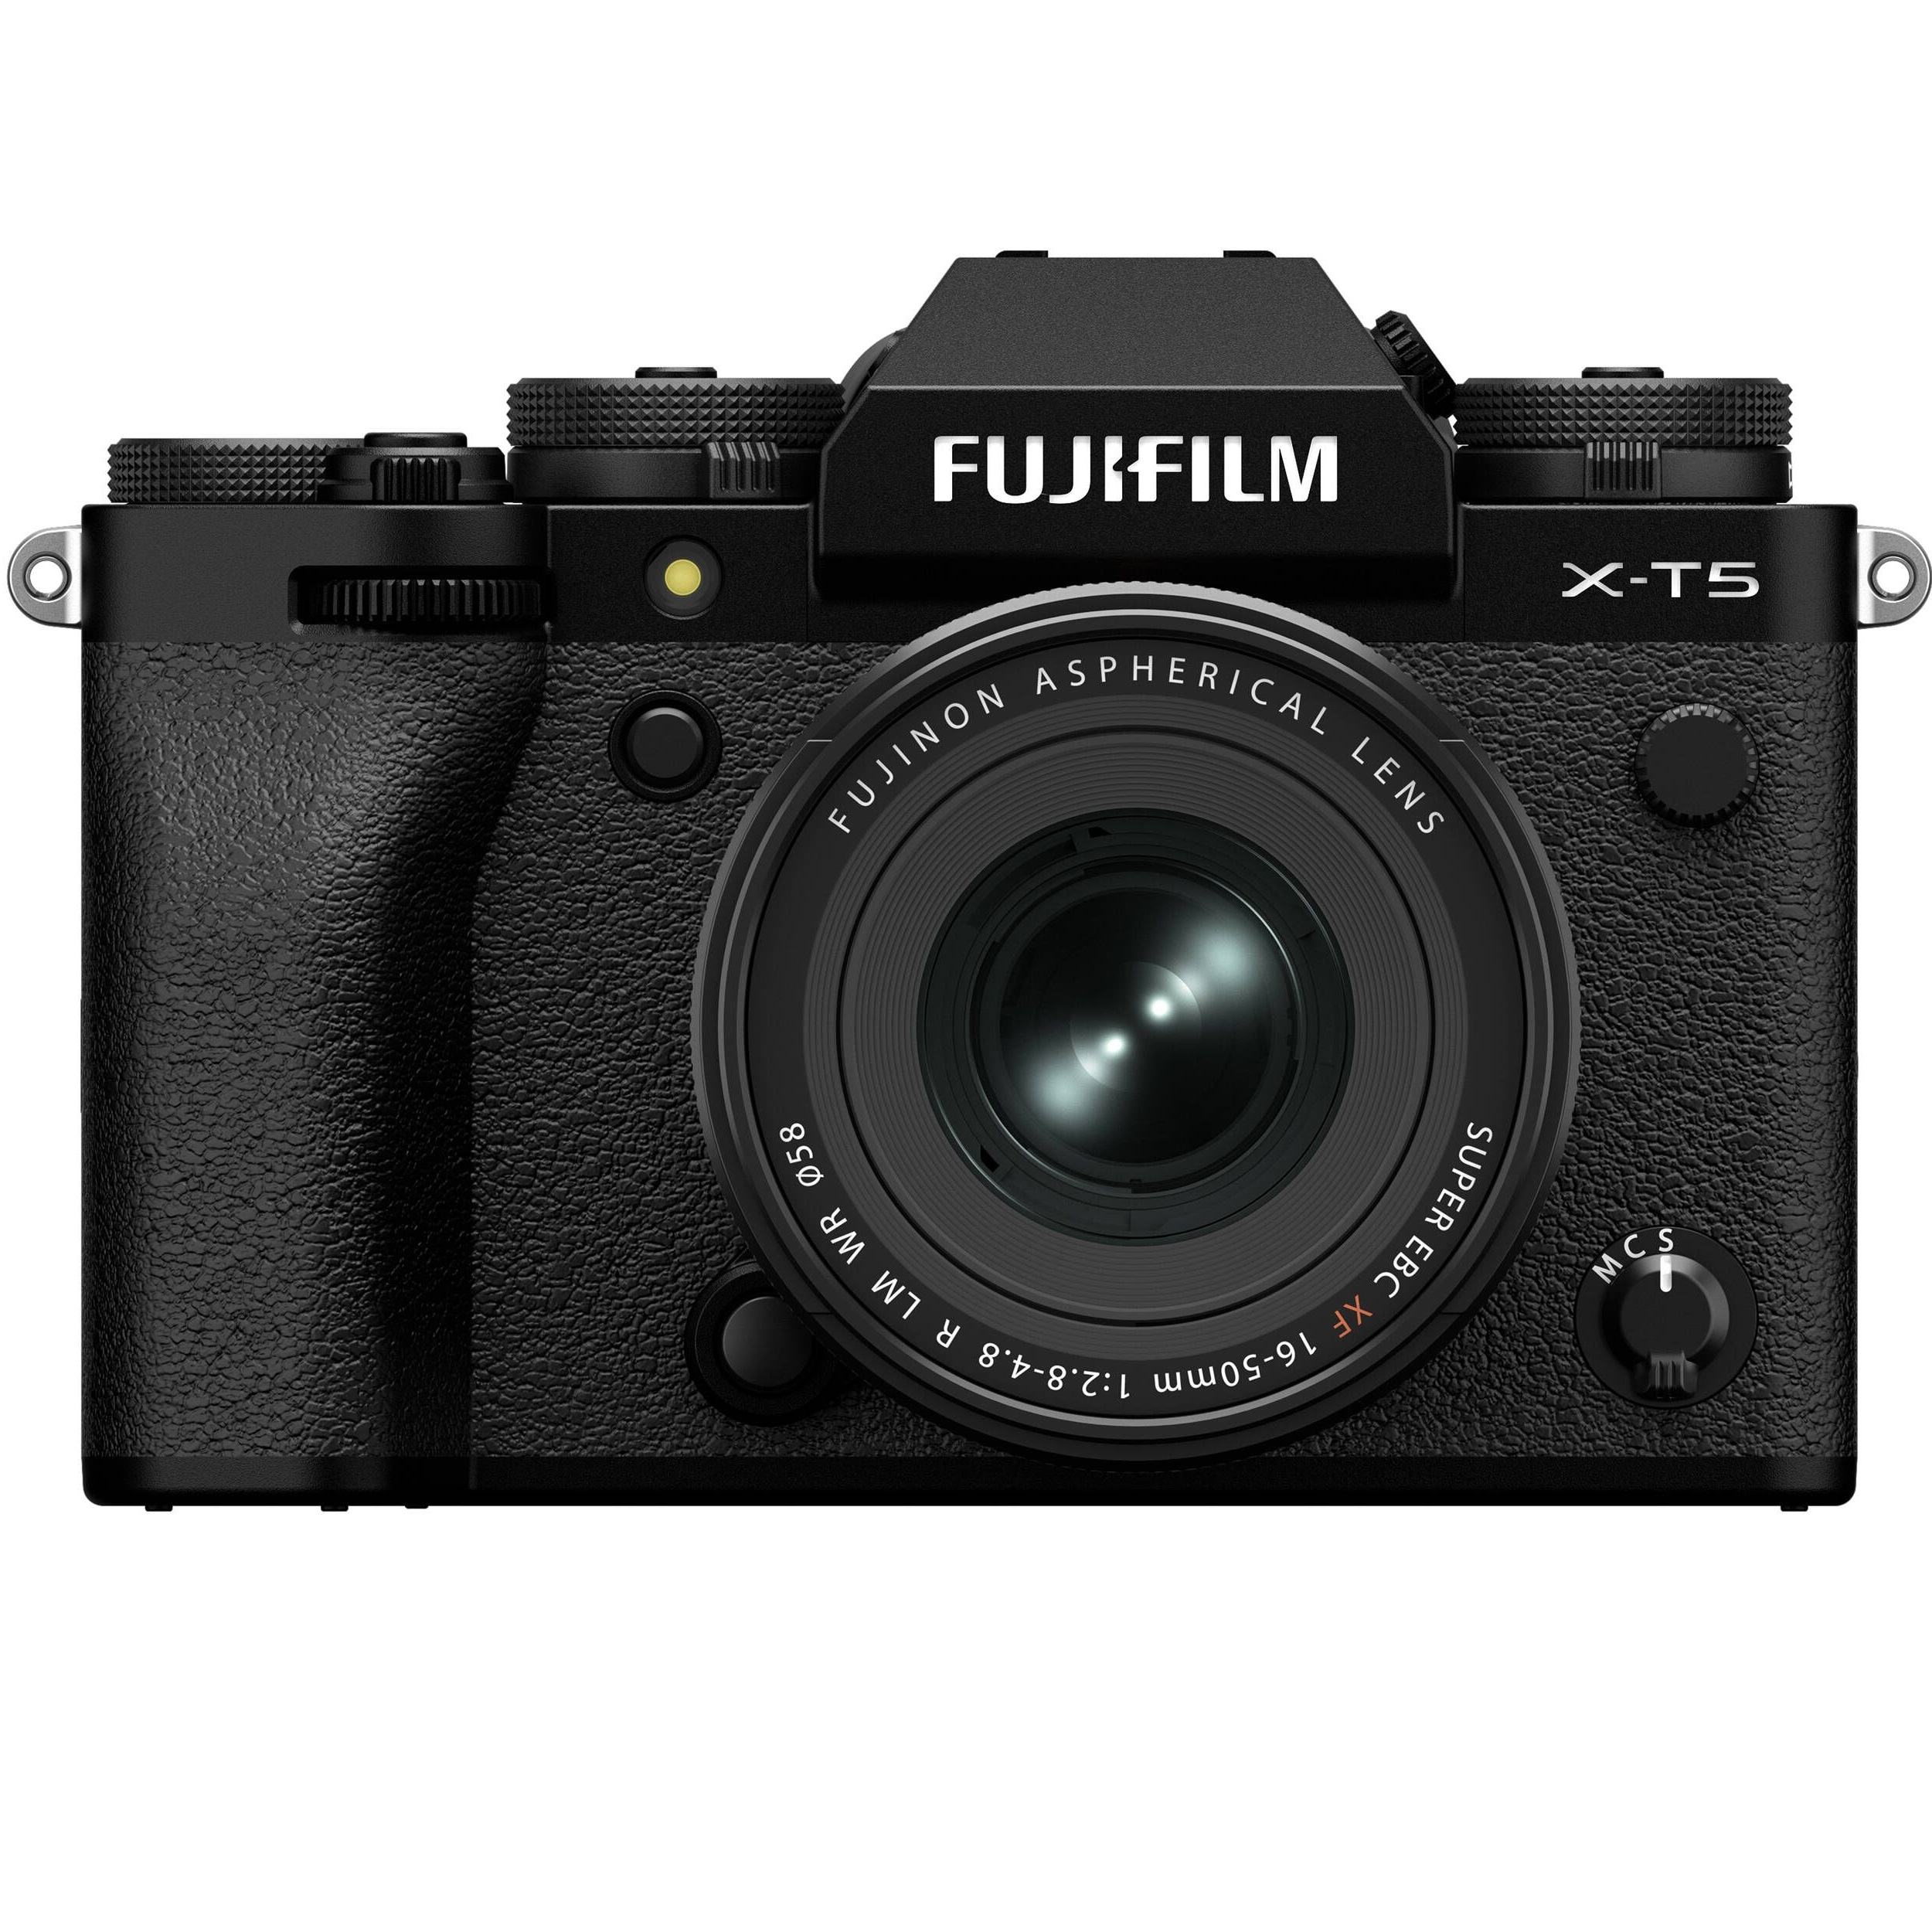 Фотоаппарат FUJIFILM X-T5 + XF 16-50mm F2.8-4.8R LM WR Black (16842565) фото 1